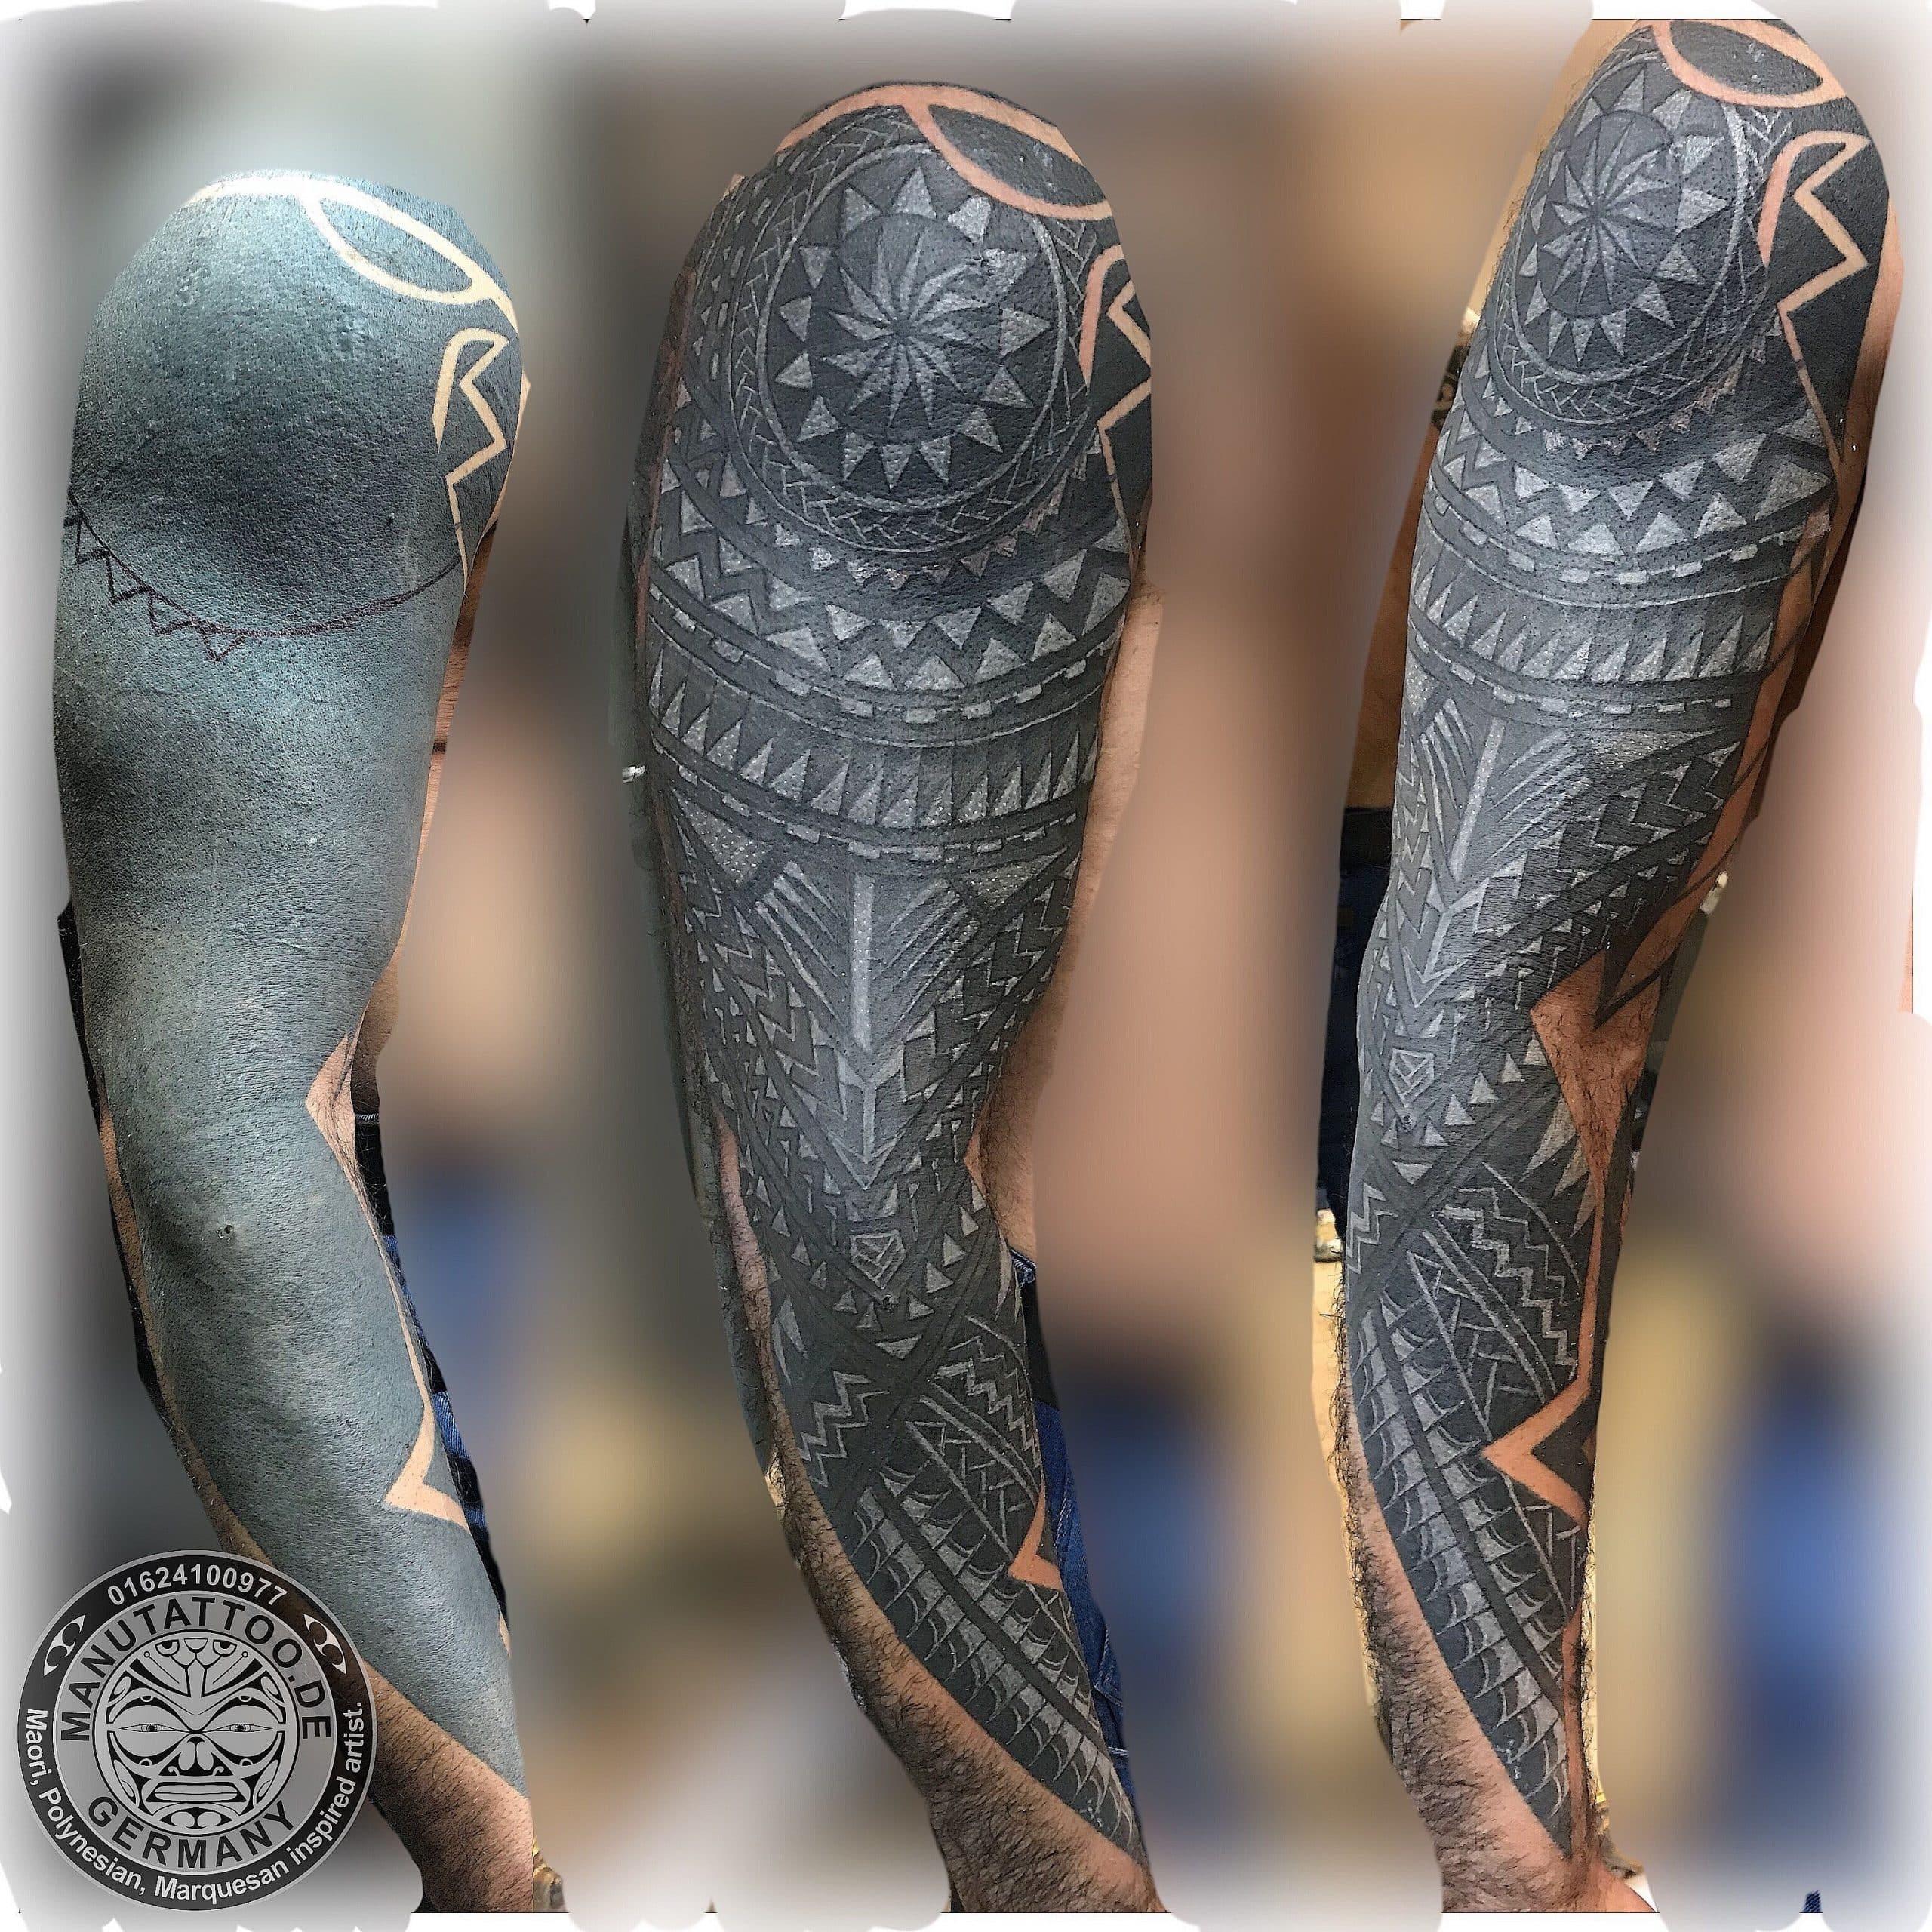 Inverse white polynesian tattoo.